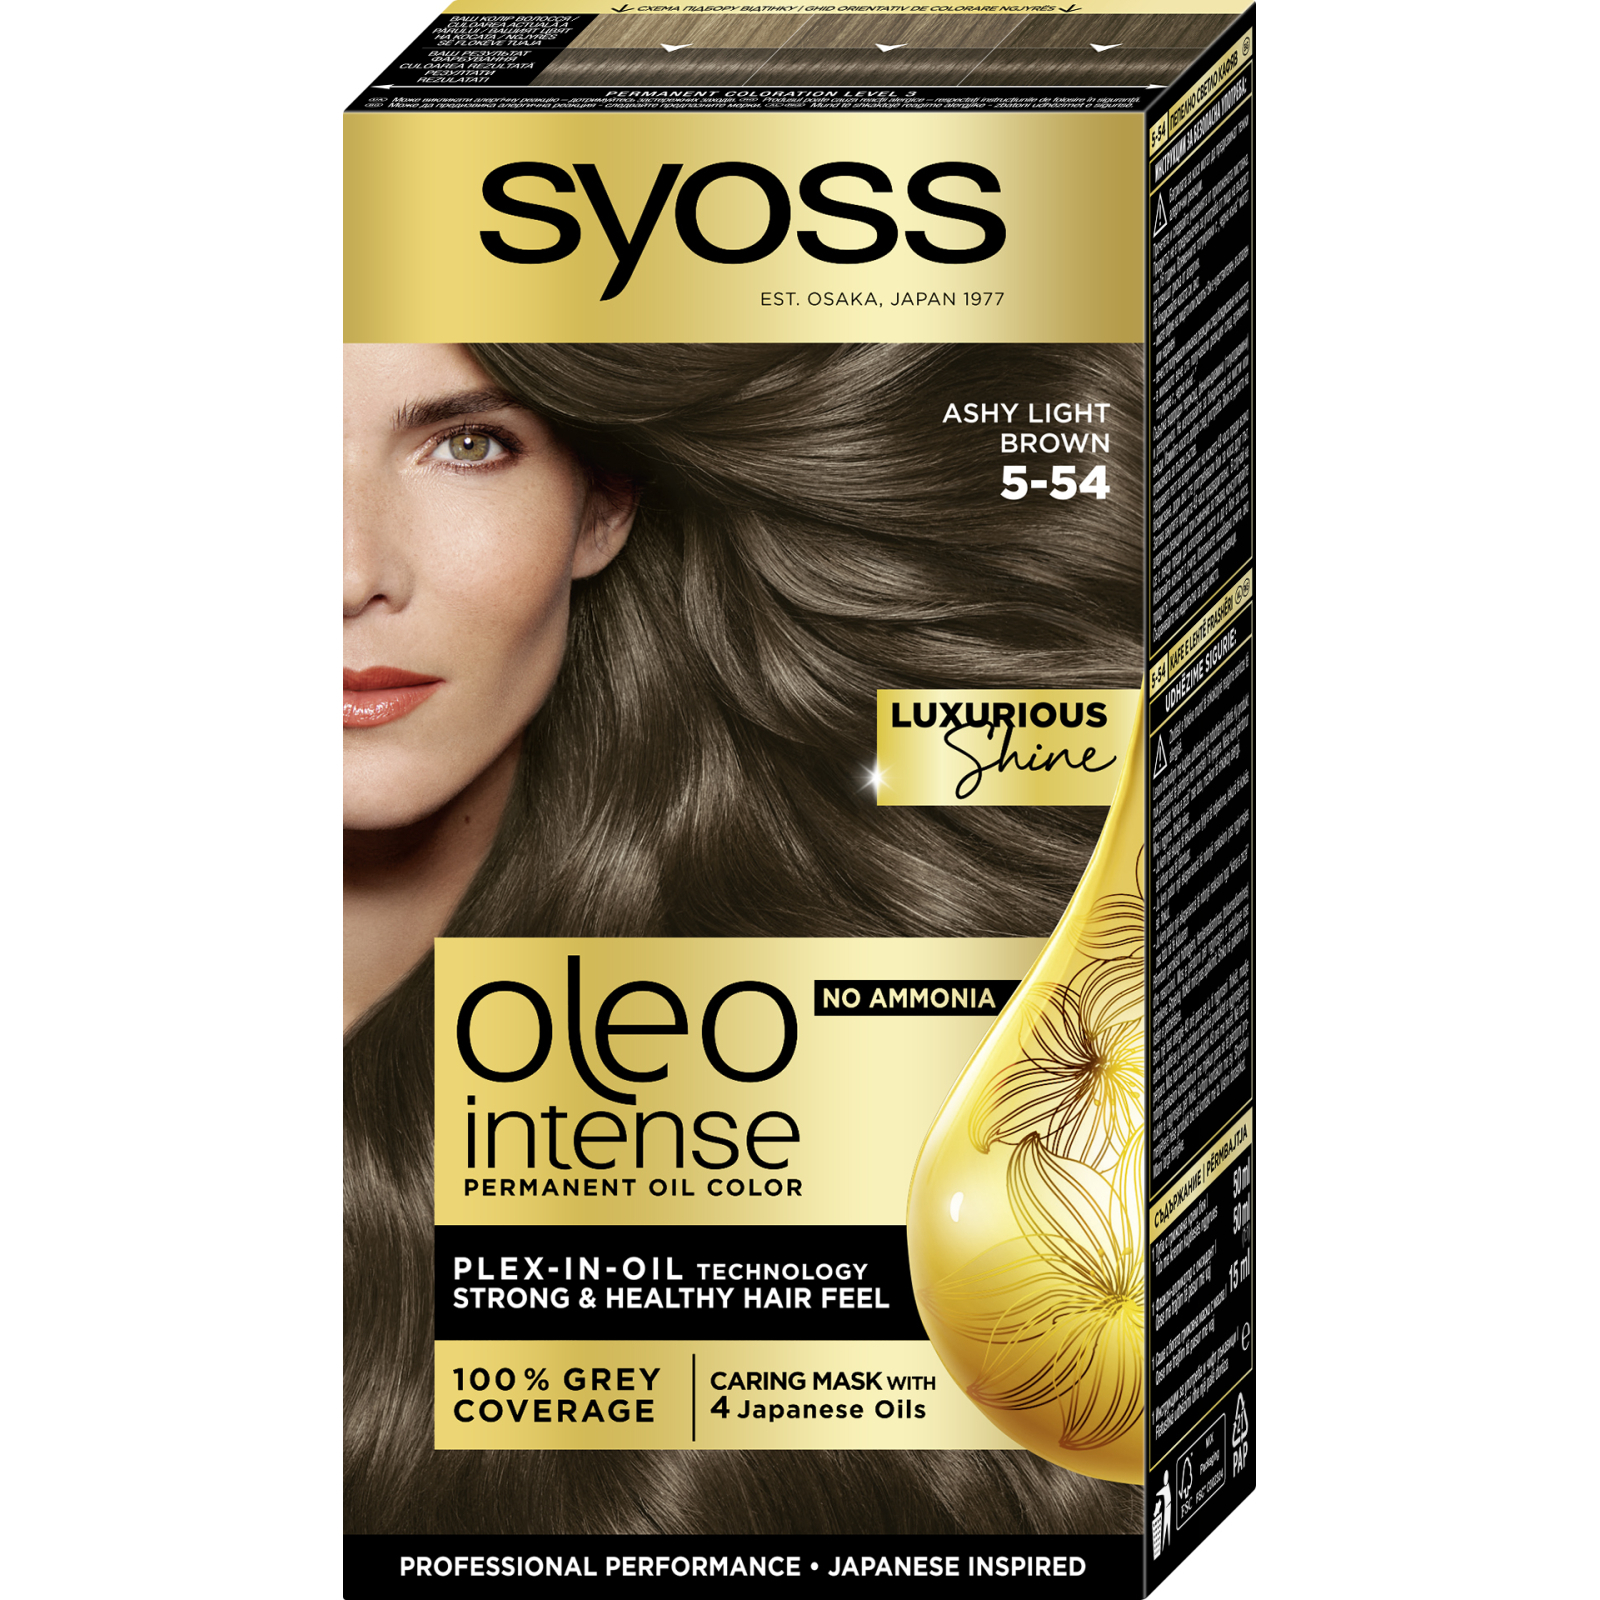 Краска для волос Syoss Oleo Intense 5-77 Глянцевая бронза 115 мл (4015001012132)